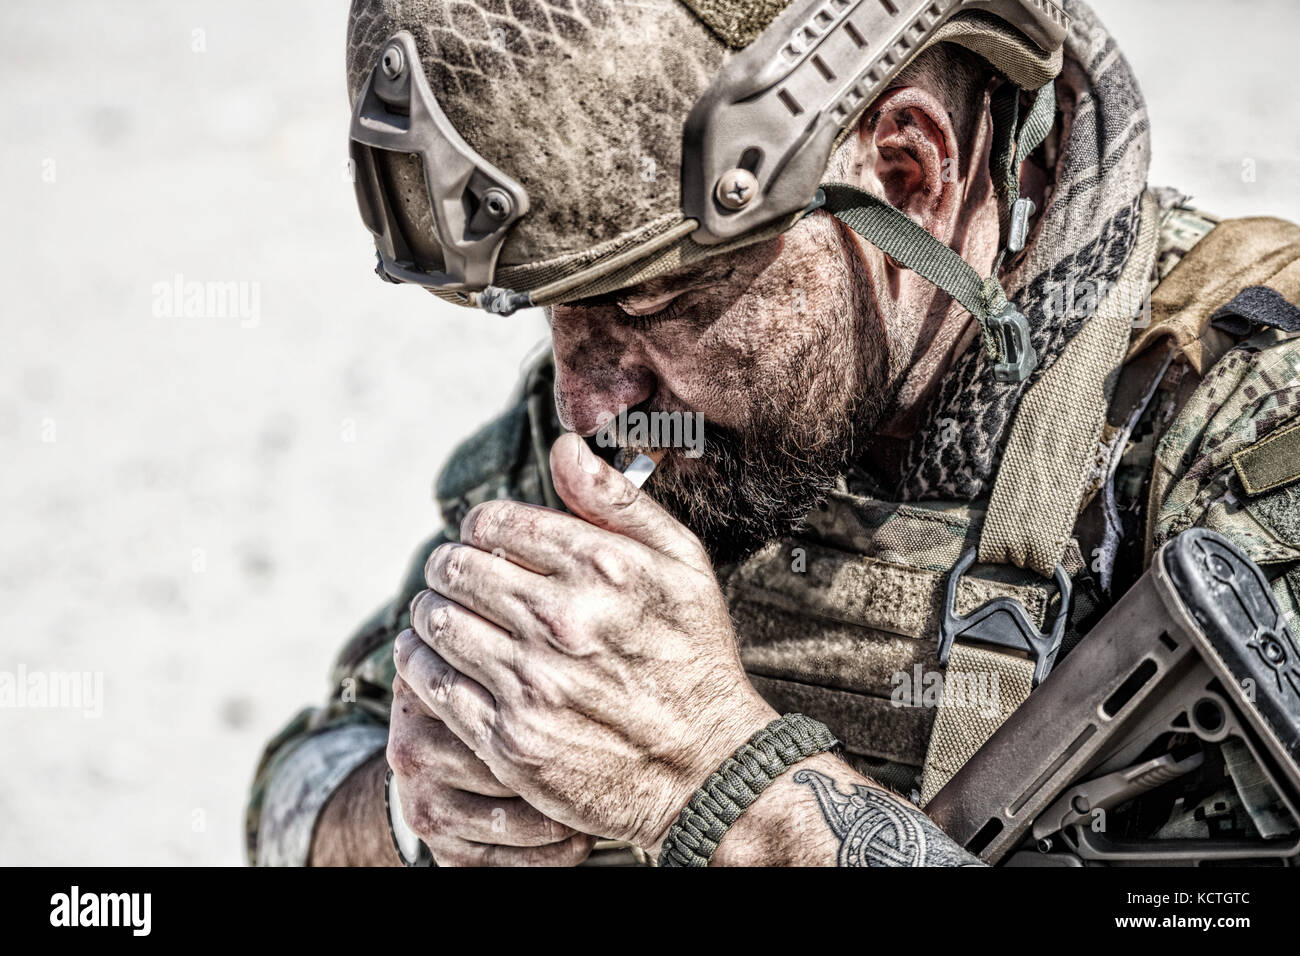 Army soldier smoking Stock Photo